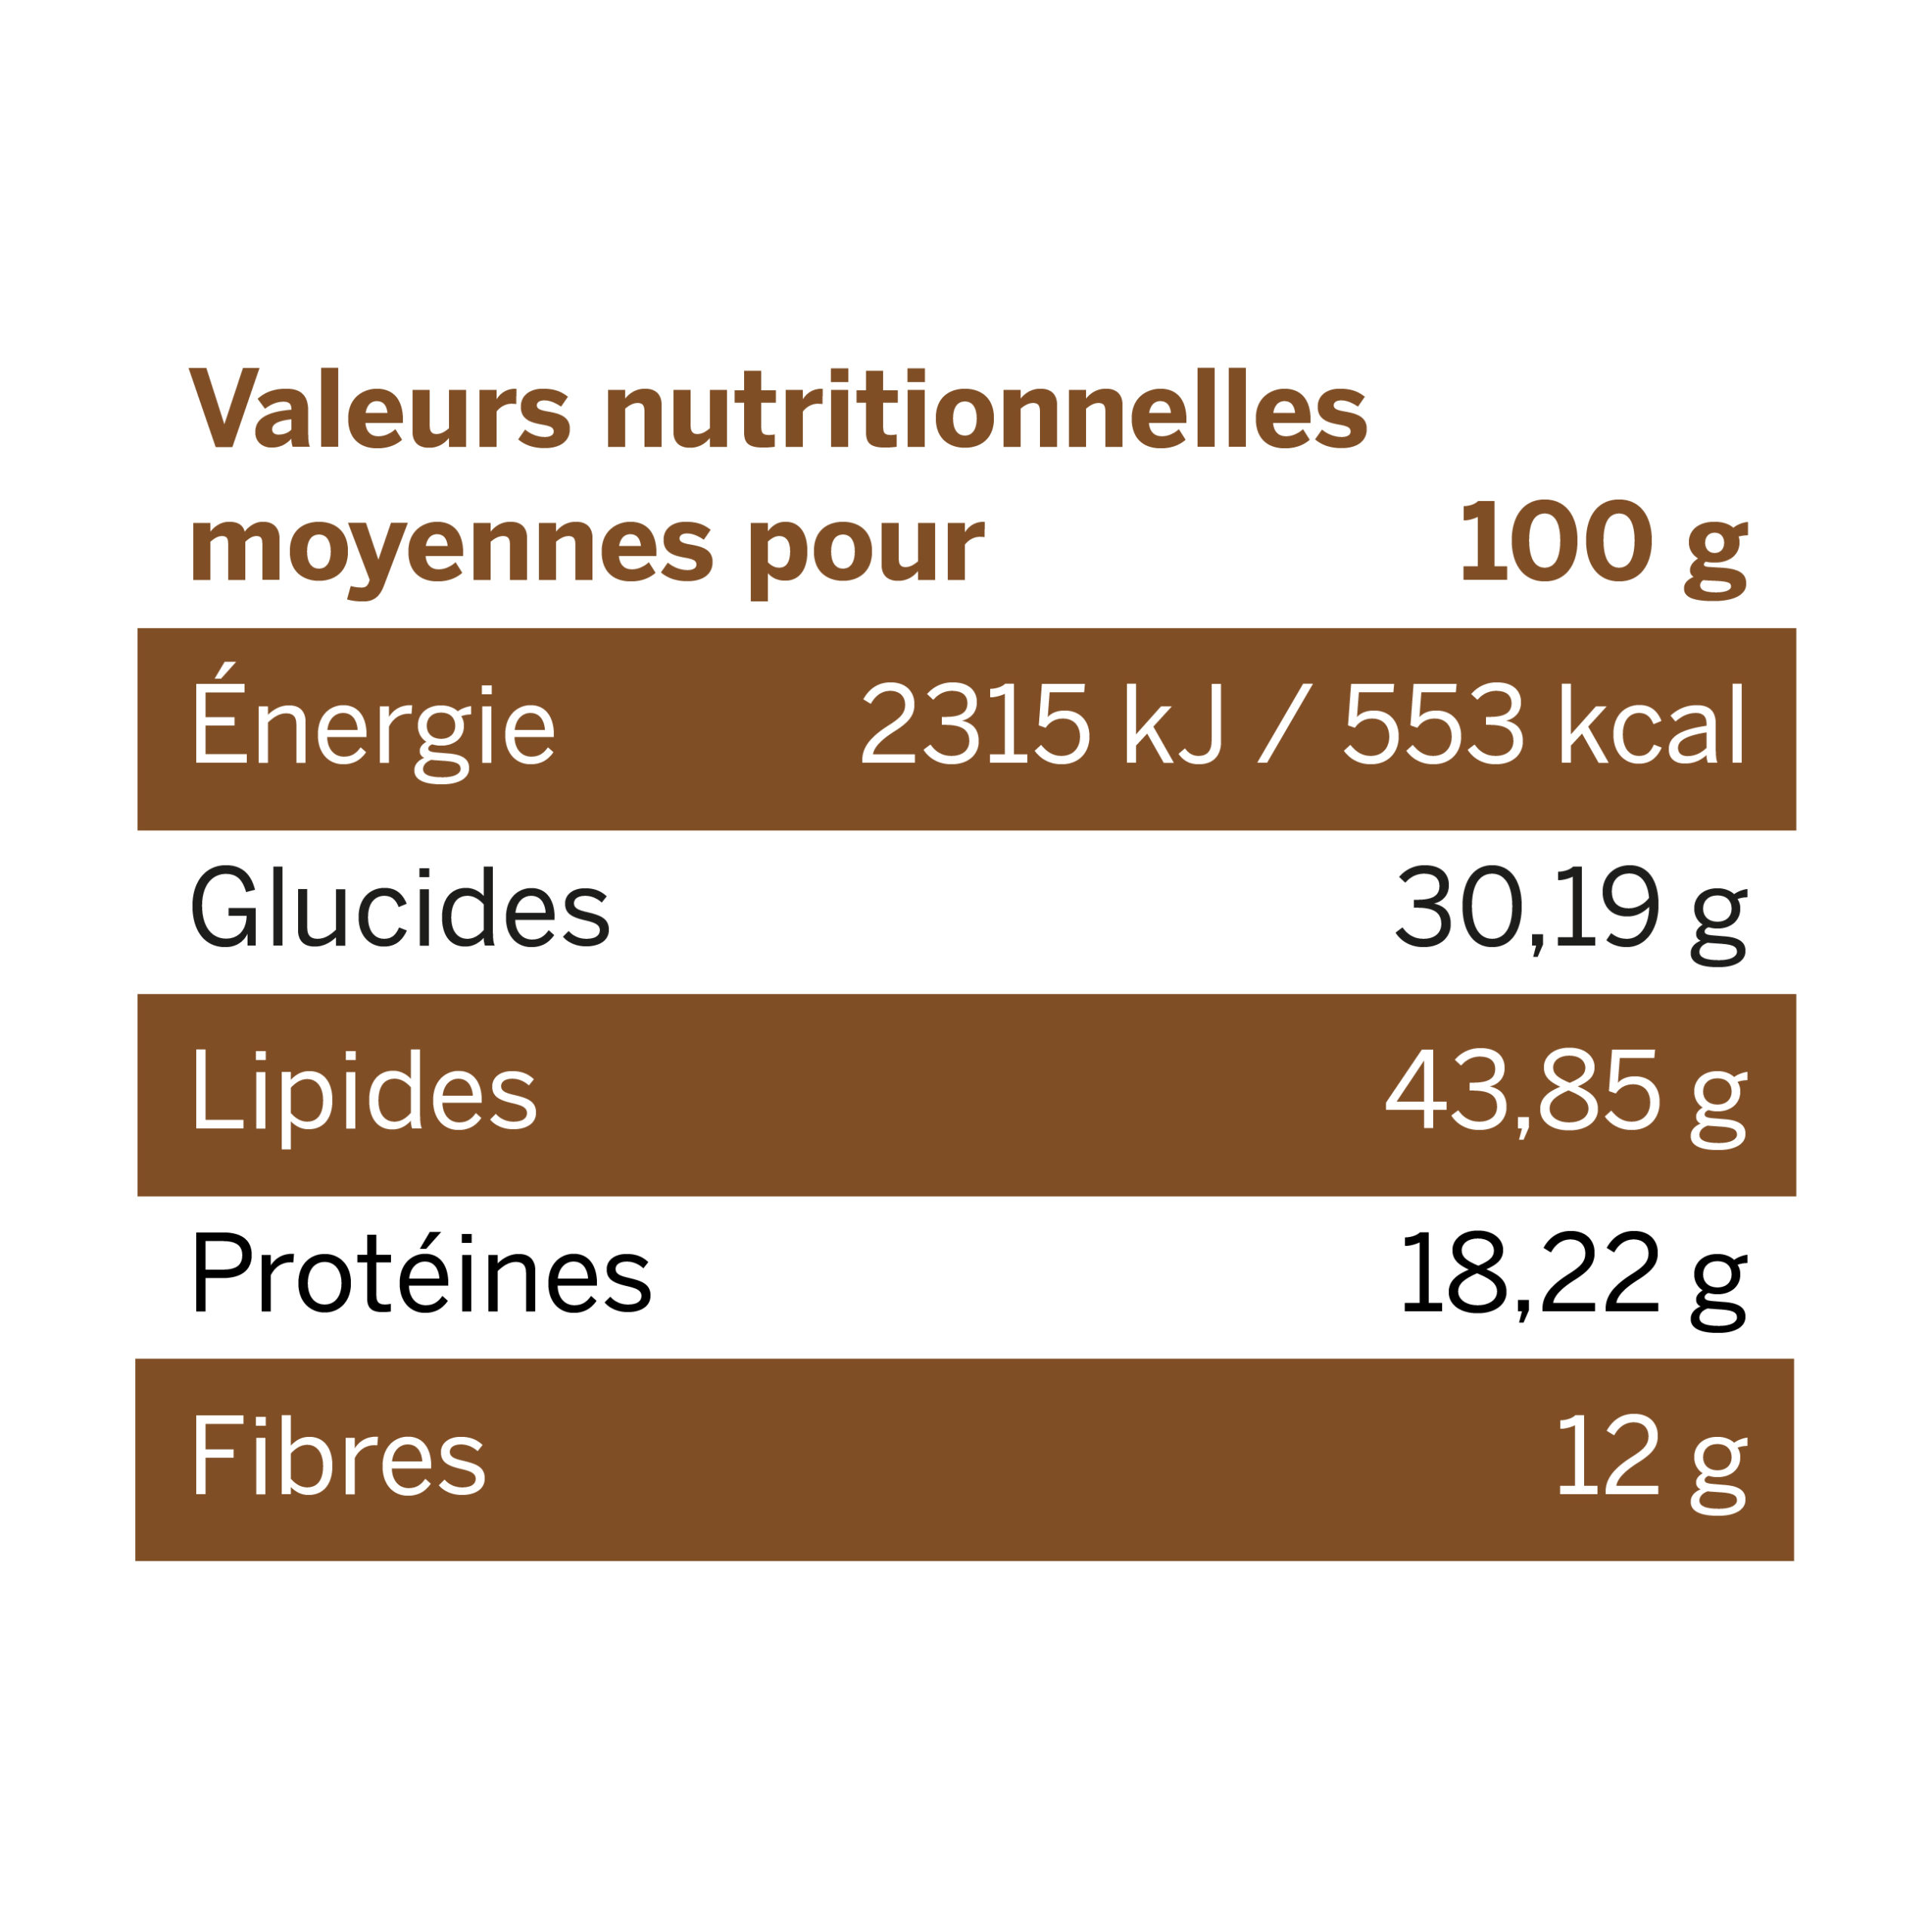 Tableau des valeurs nutritionnelles des noix de cajou